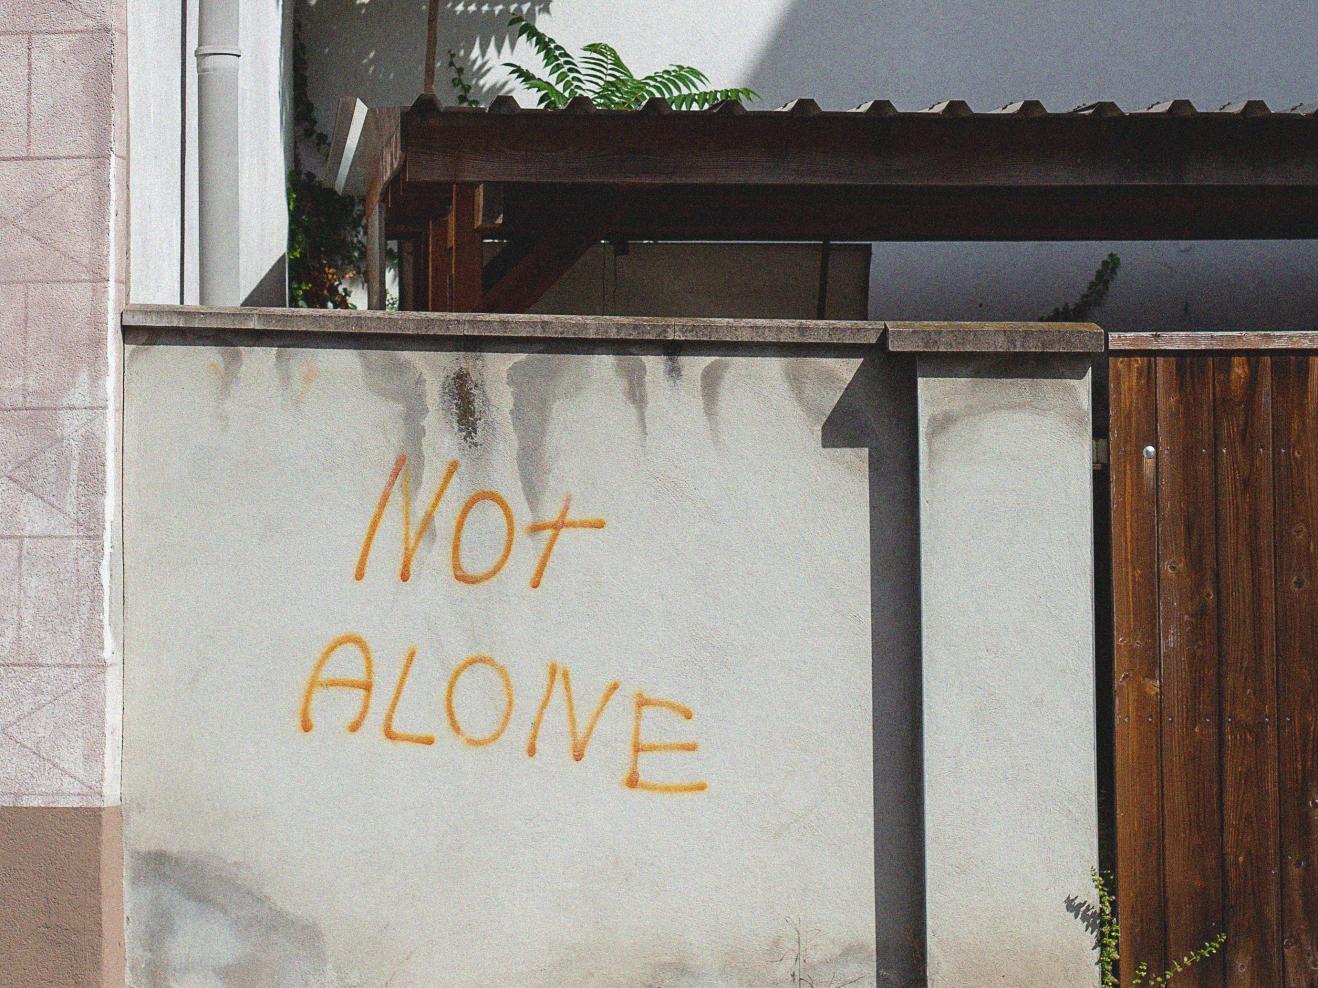 Grafitti auf einer Hauswand, Text: "Not Alone", auf deutsch "Nicht allein".